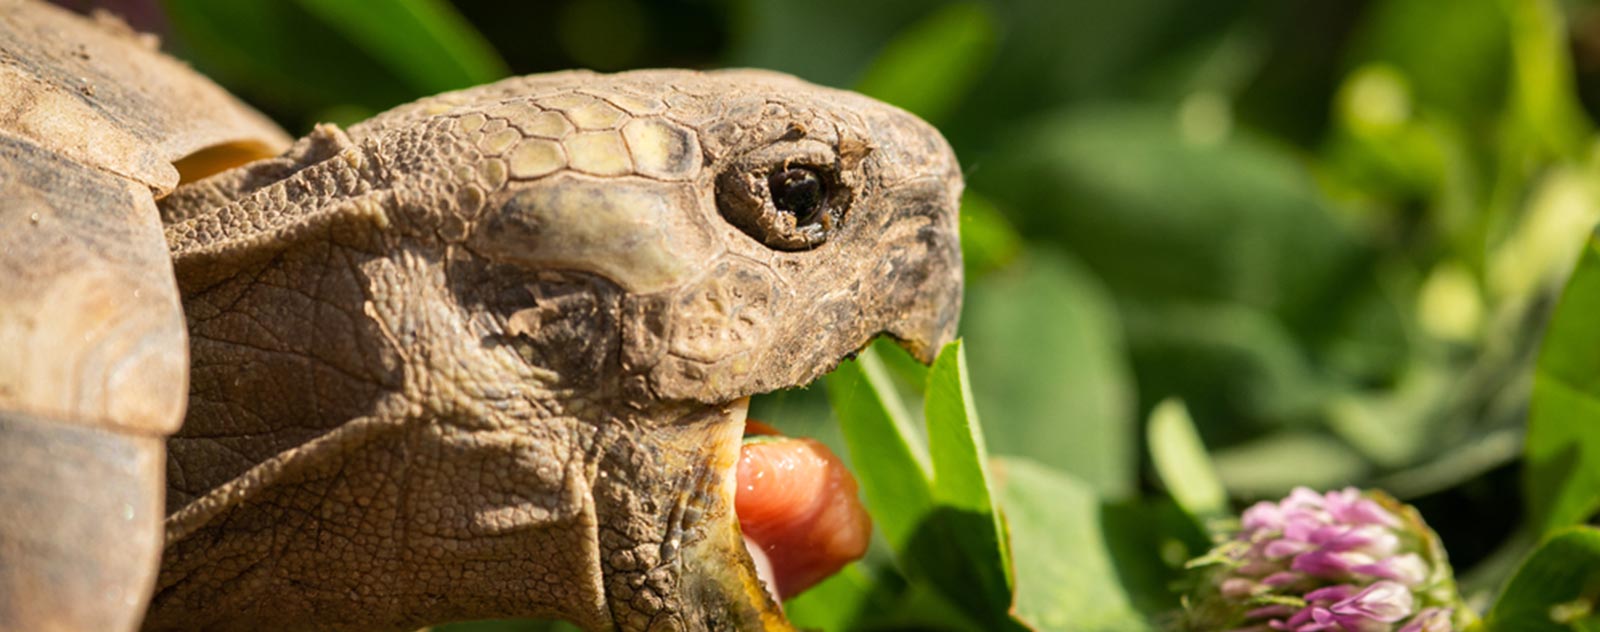 Qu'est-ce que mange la tortue de terre ?